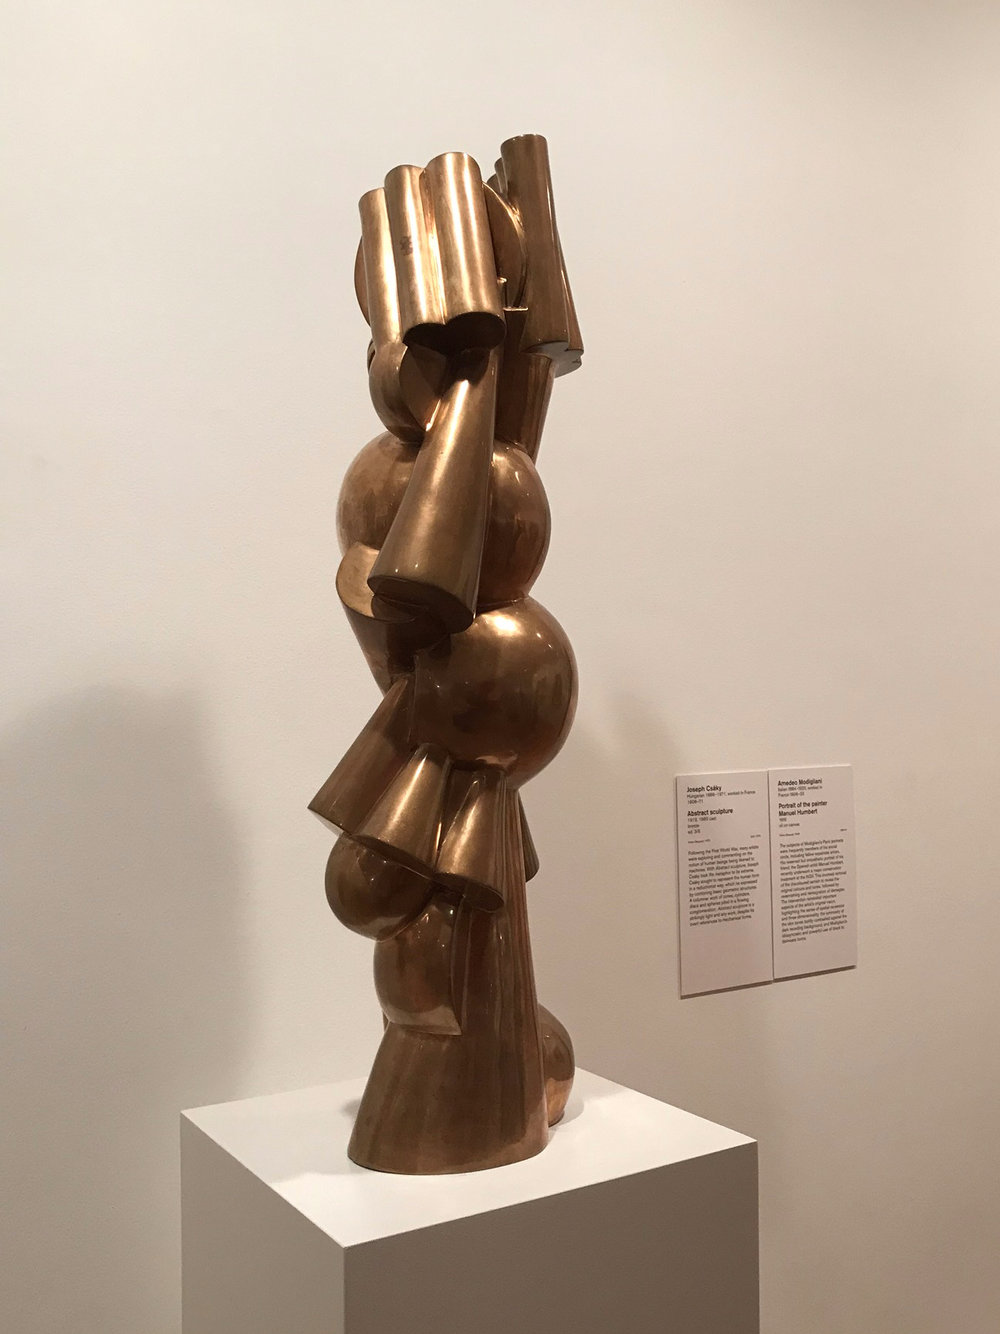 Joseph Csaky Abstract Cubist Sculpture.jpg